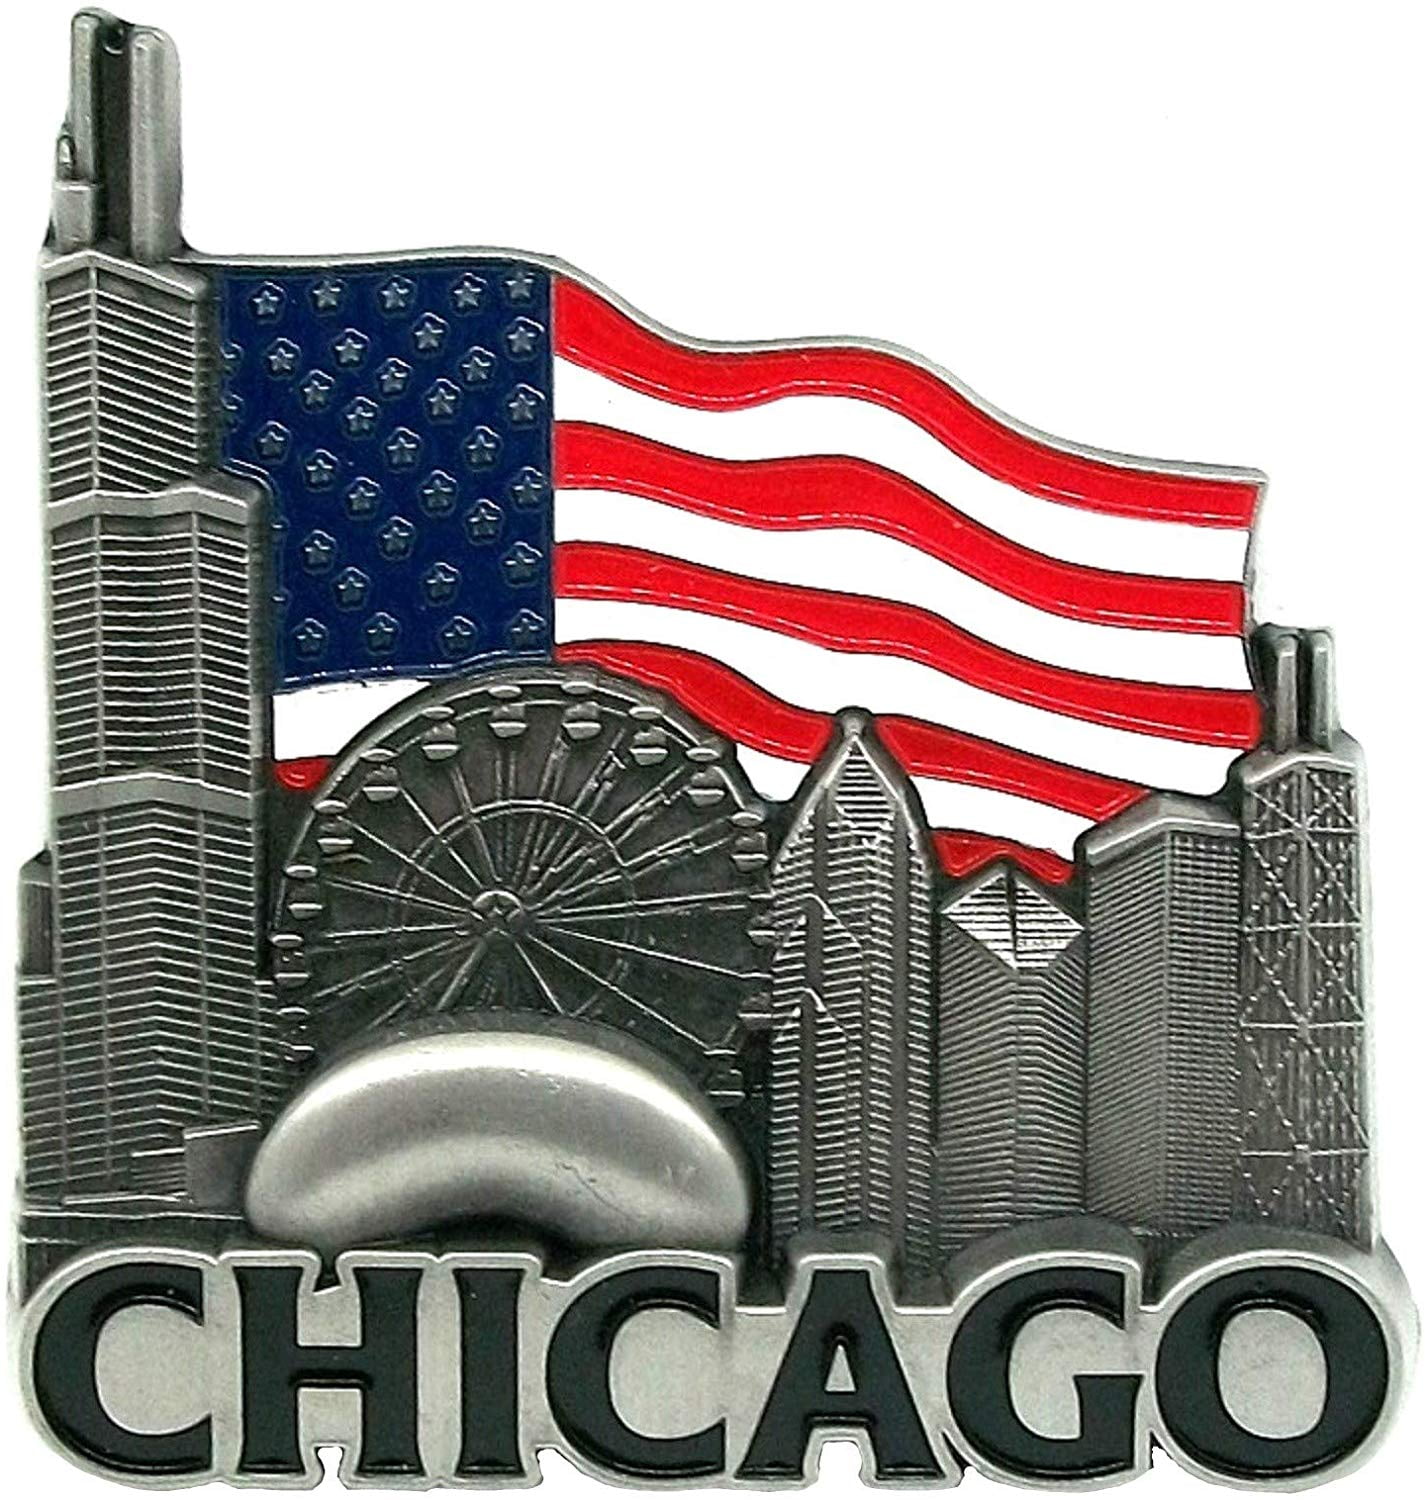 USA CHICAGO FRIDGE MAGNET 1 